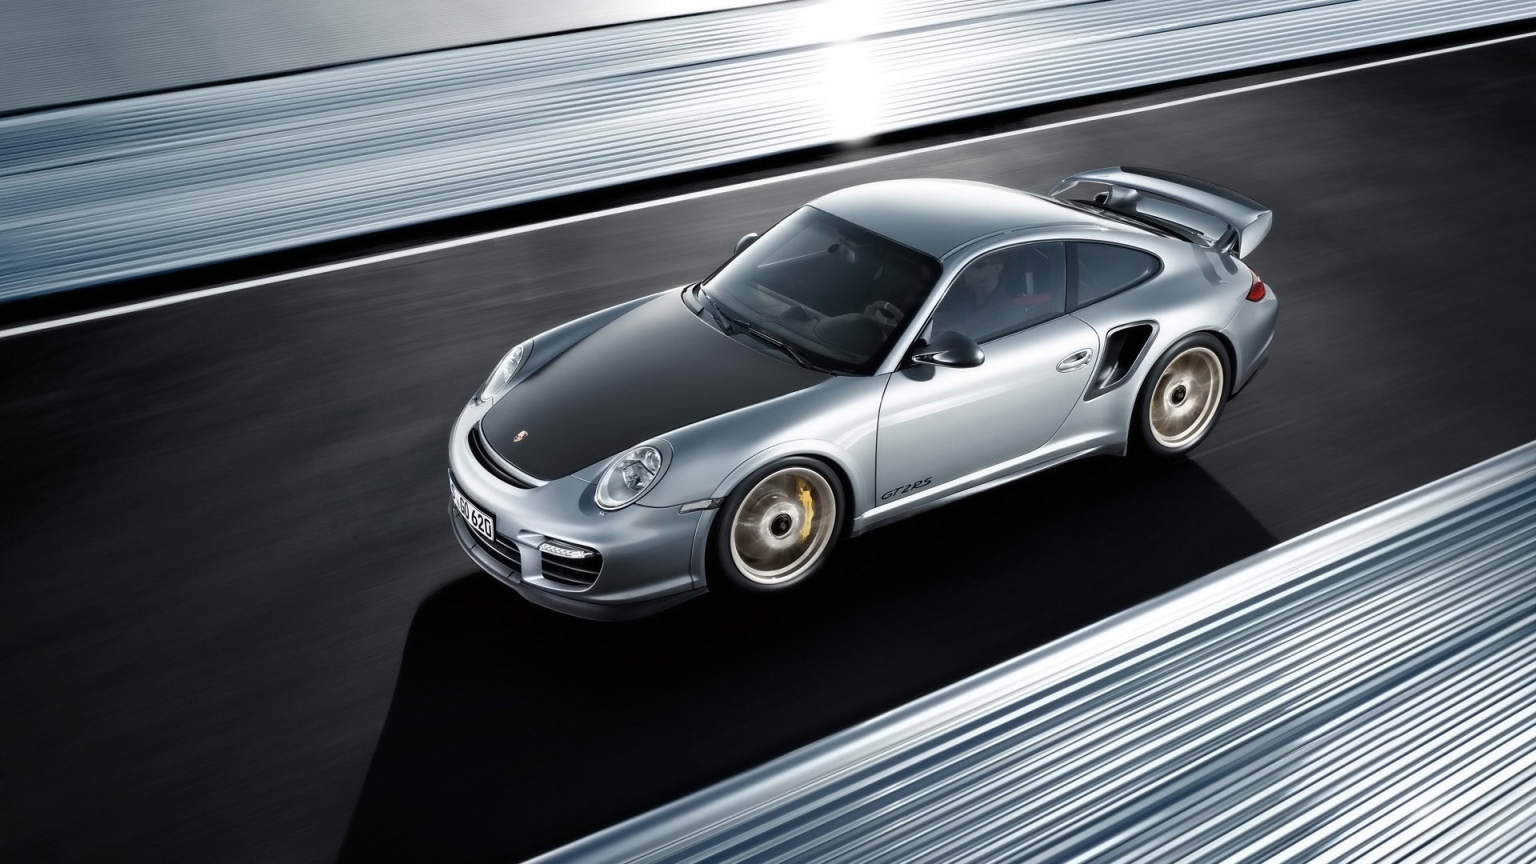 Porsche 911 GT2 RS 2011 for 1536 x 864 HDTV resolution